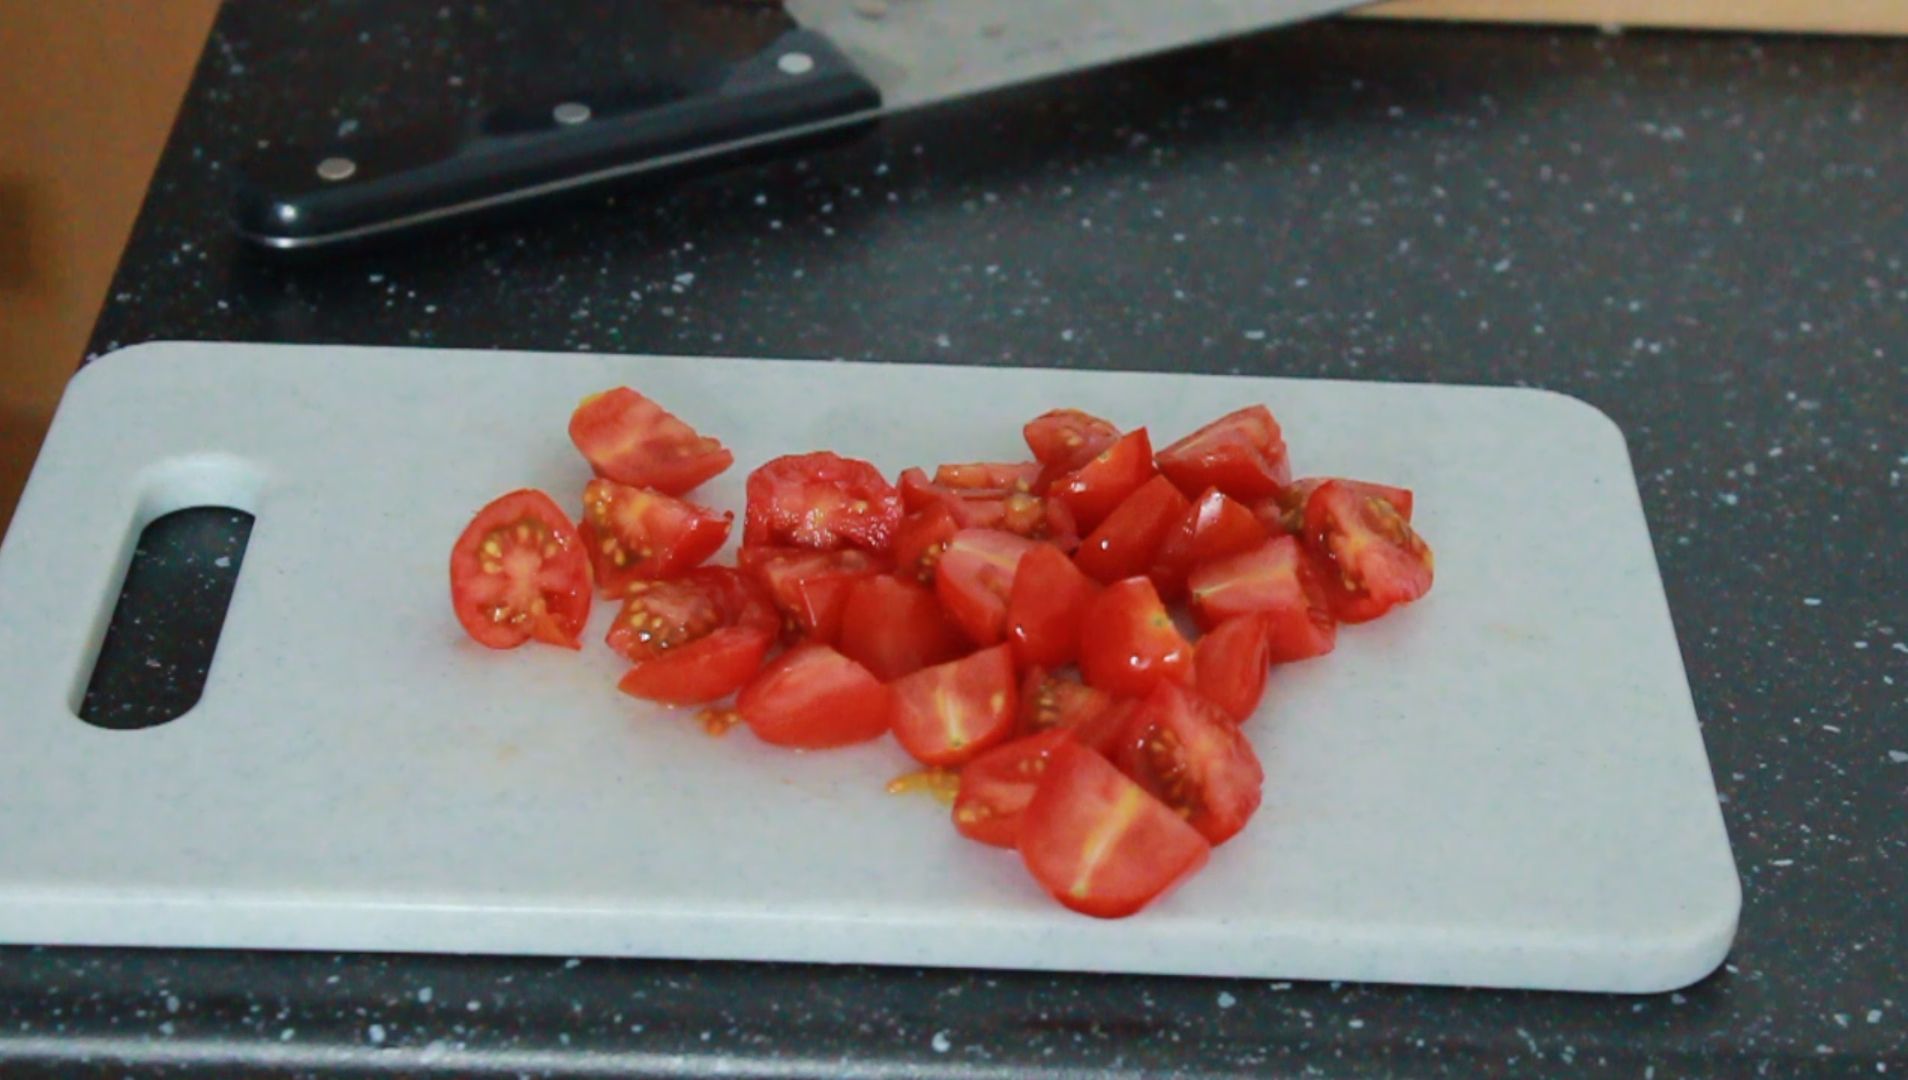 tomatoe pieces.jpg